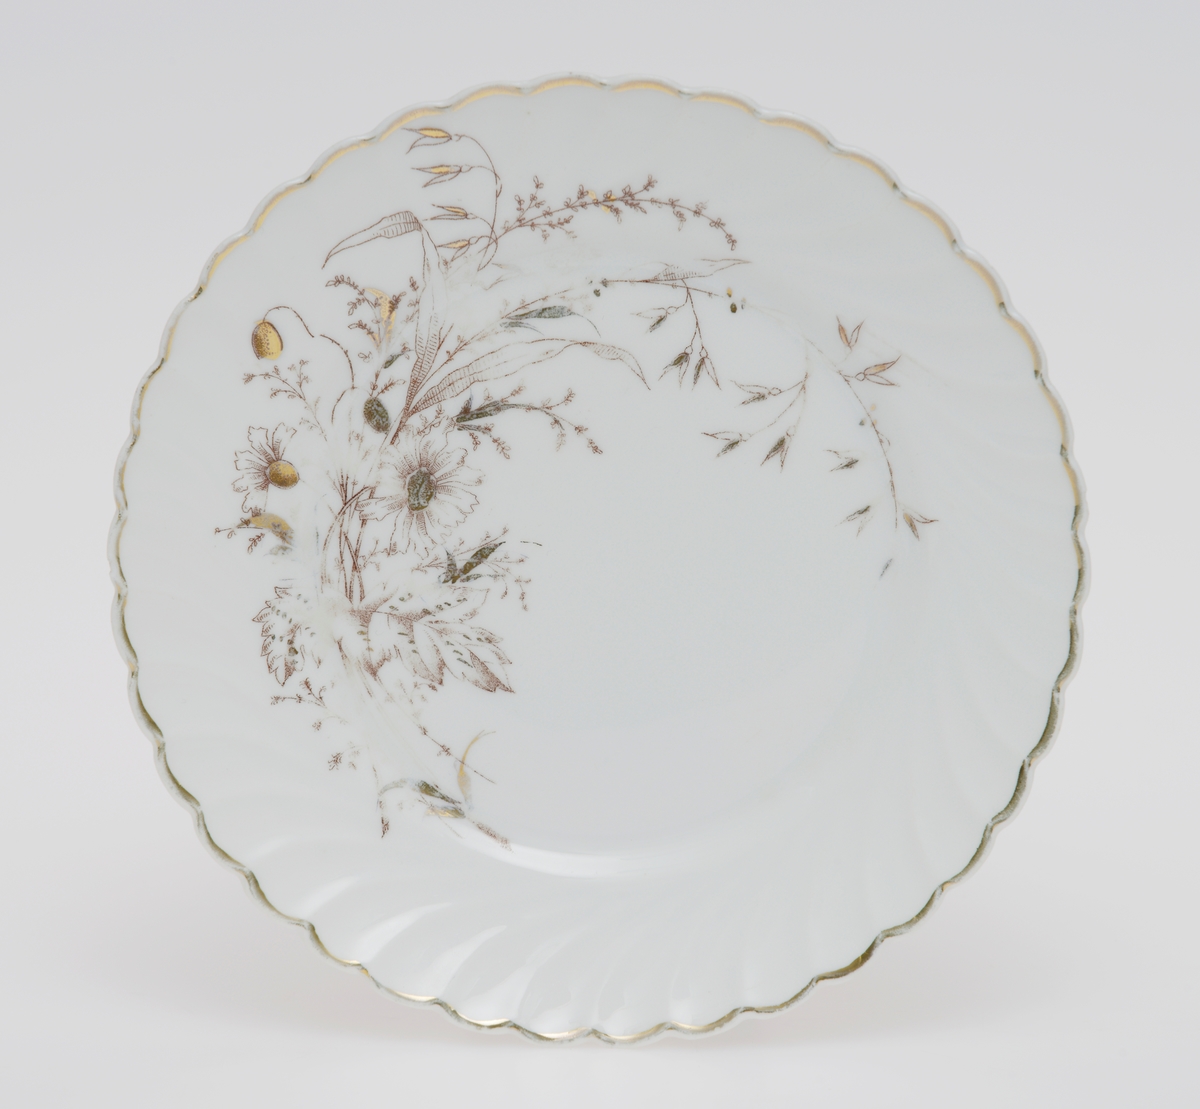 Sirkulær tallerken i porselen med glasur. Dekorert med en gullforgylt ring rundt kanten som er bølgete. Blomster- og bladmotiv på halve tallerkenen. Skråstilte riller støpt inn i porselenet.